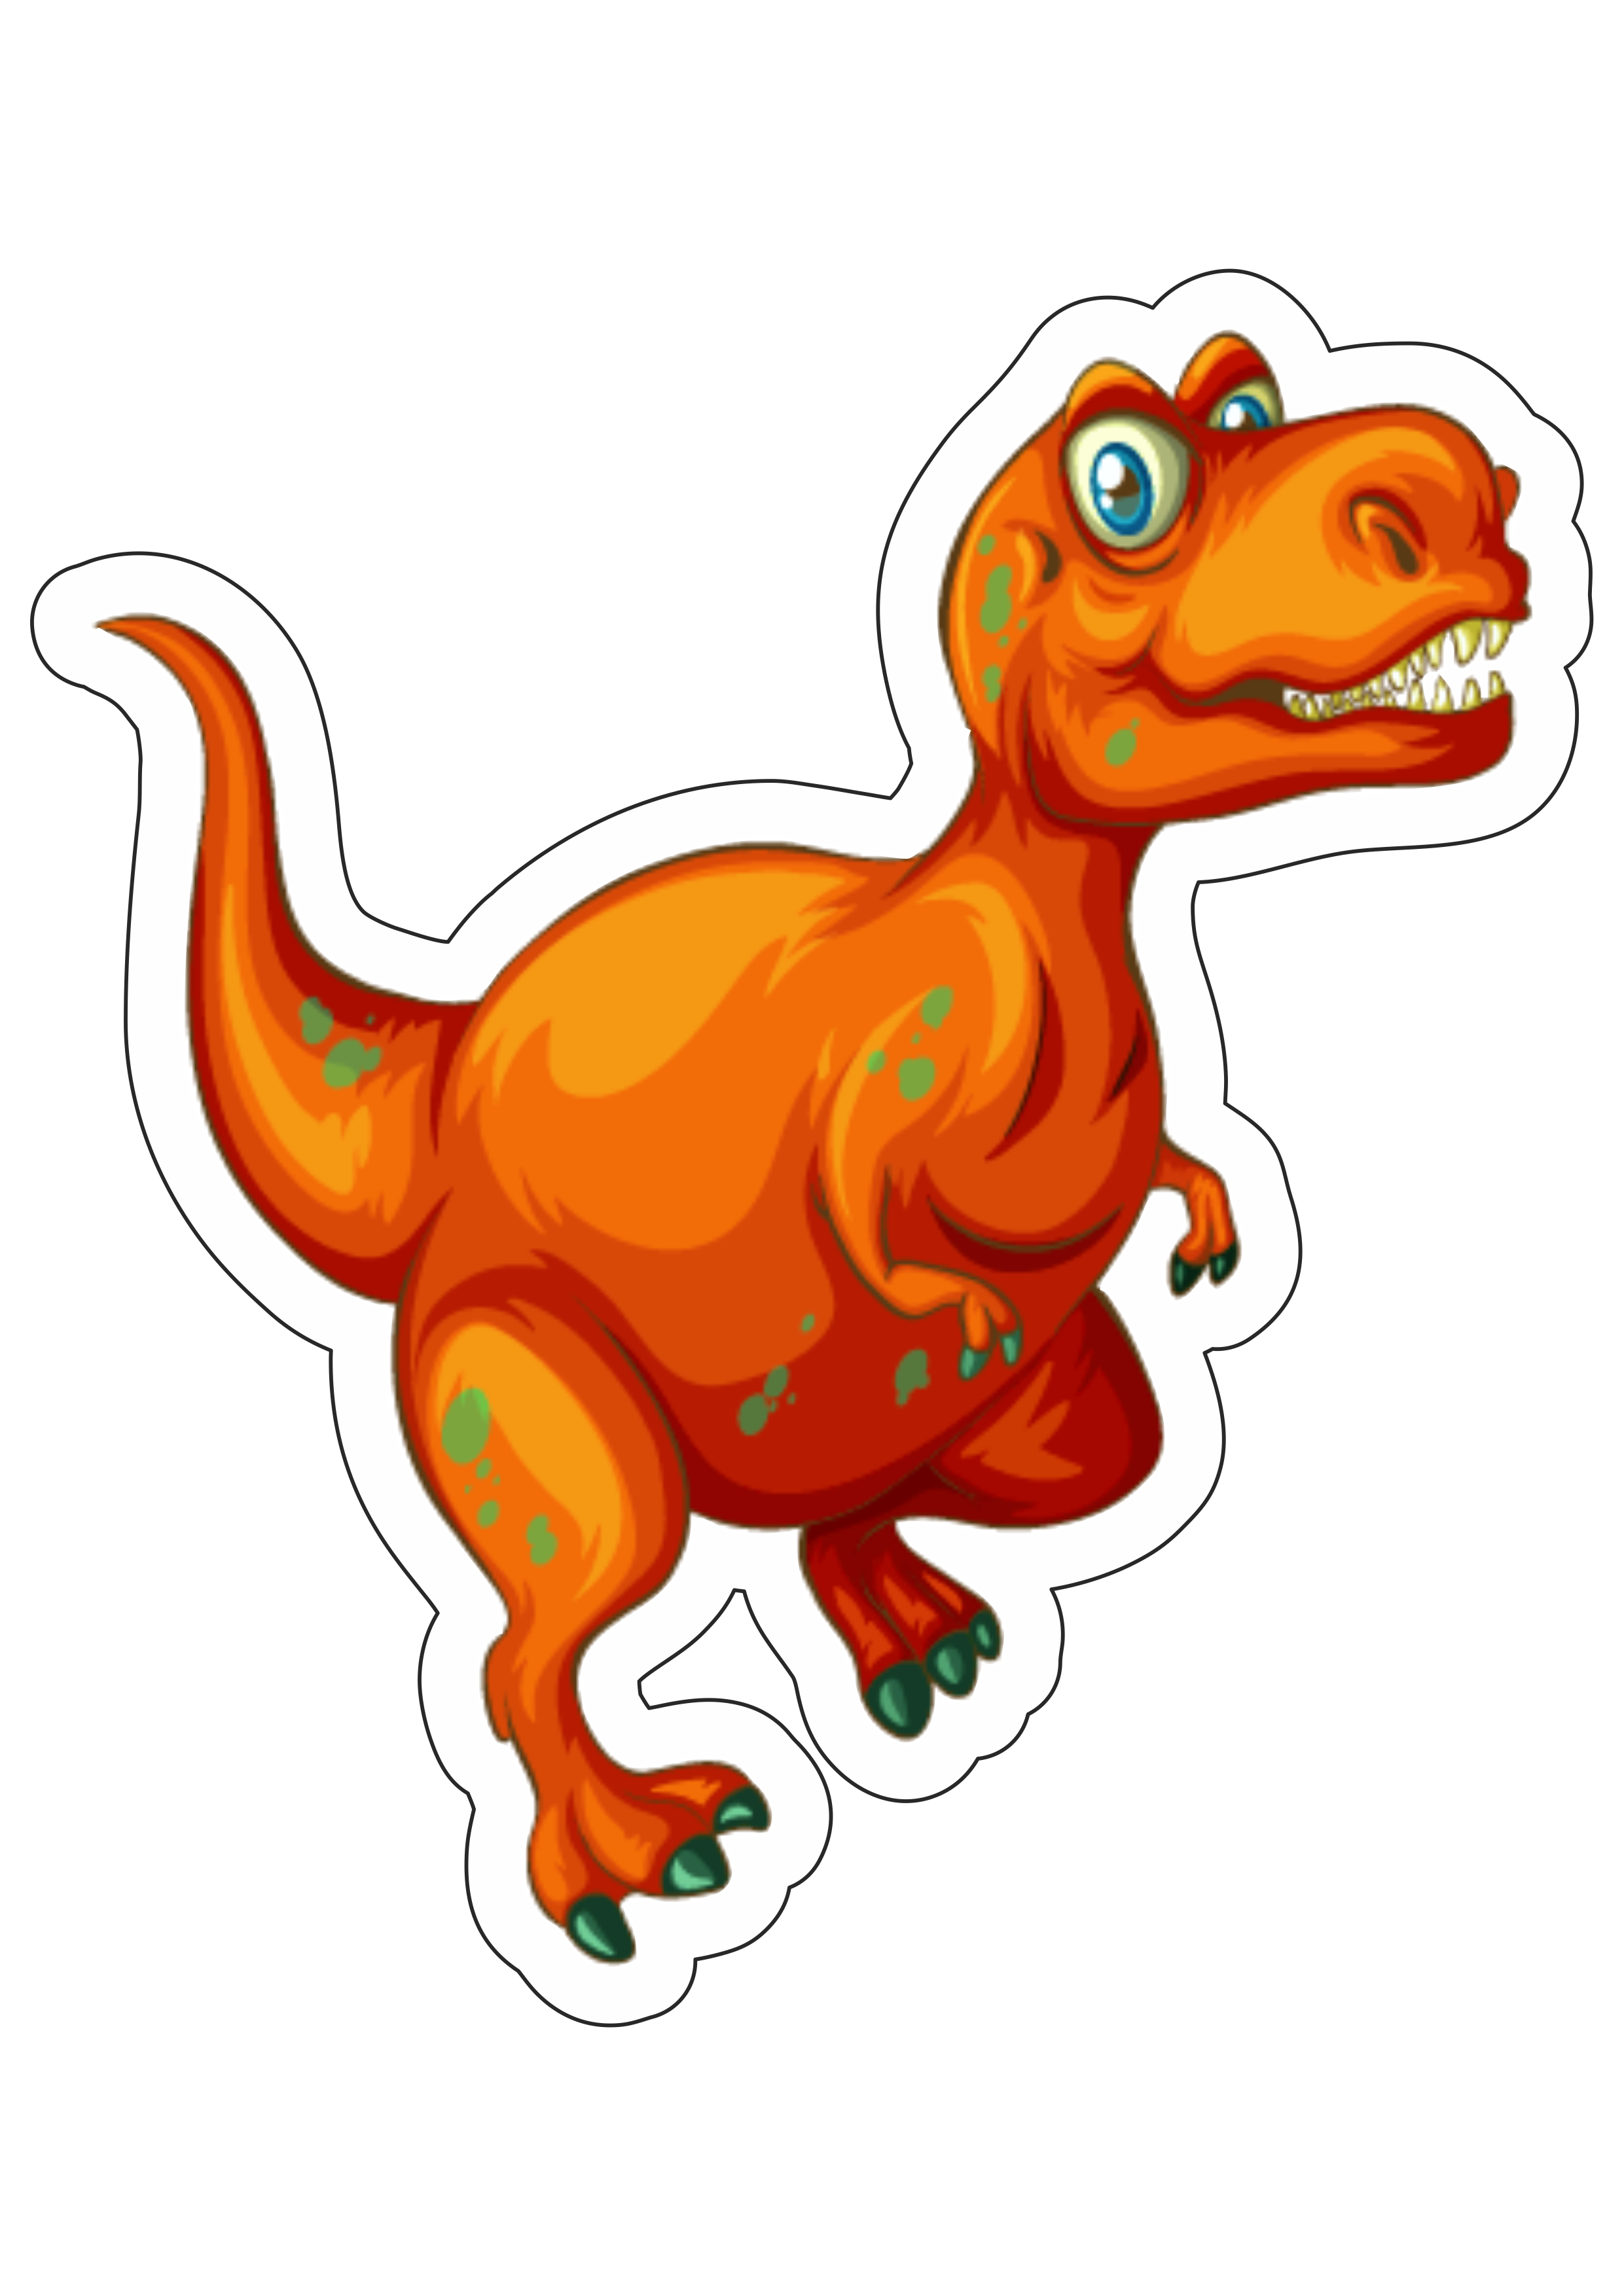 Dinossauro rex desenho png